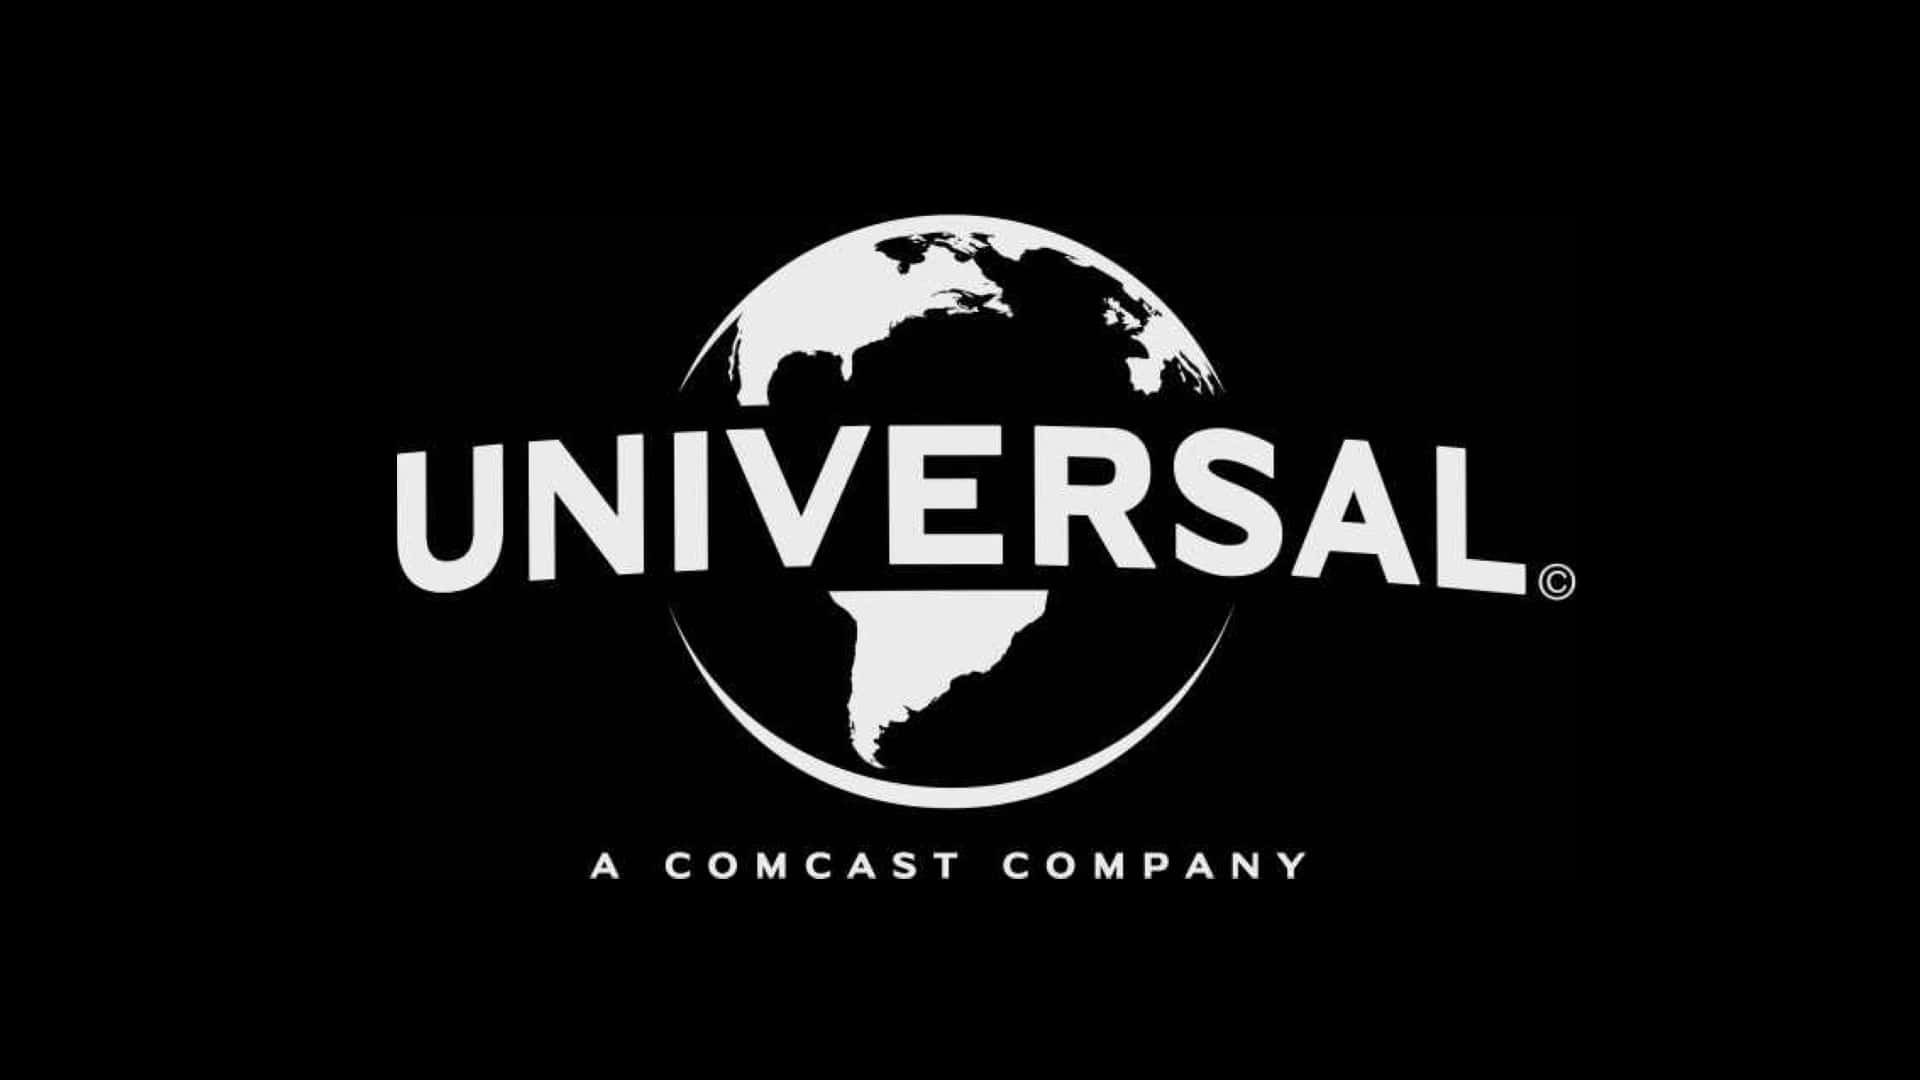 Immaginedel Logo Universal Pictures In Bianco E Nero